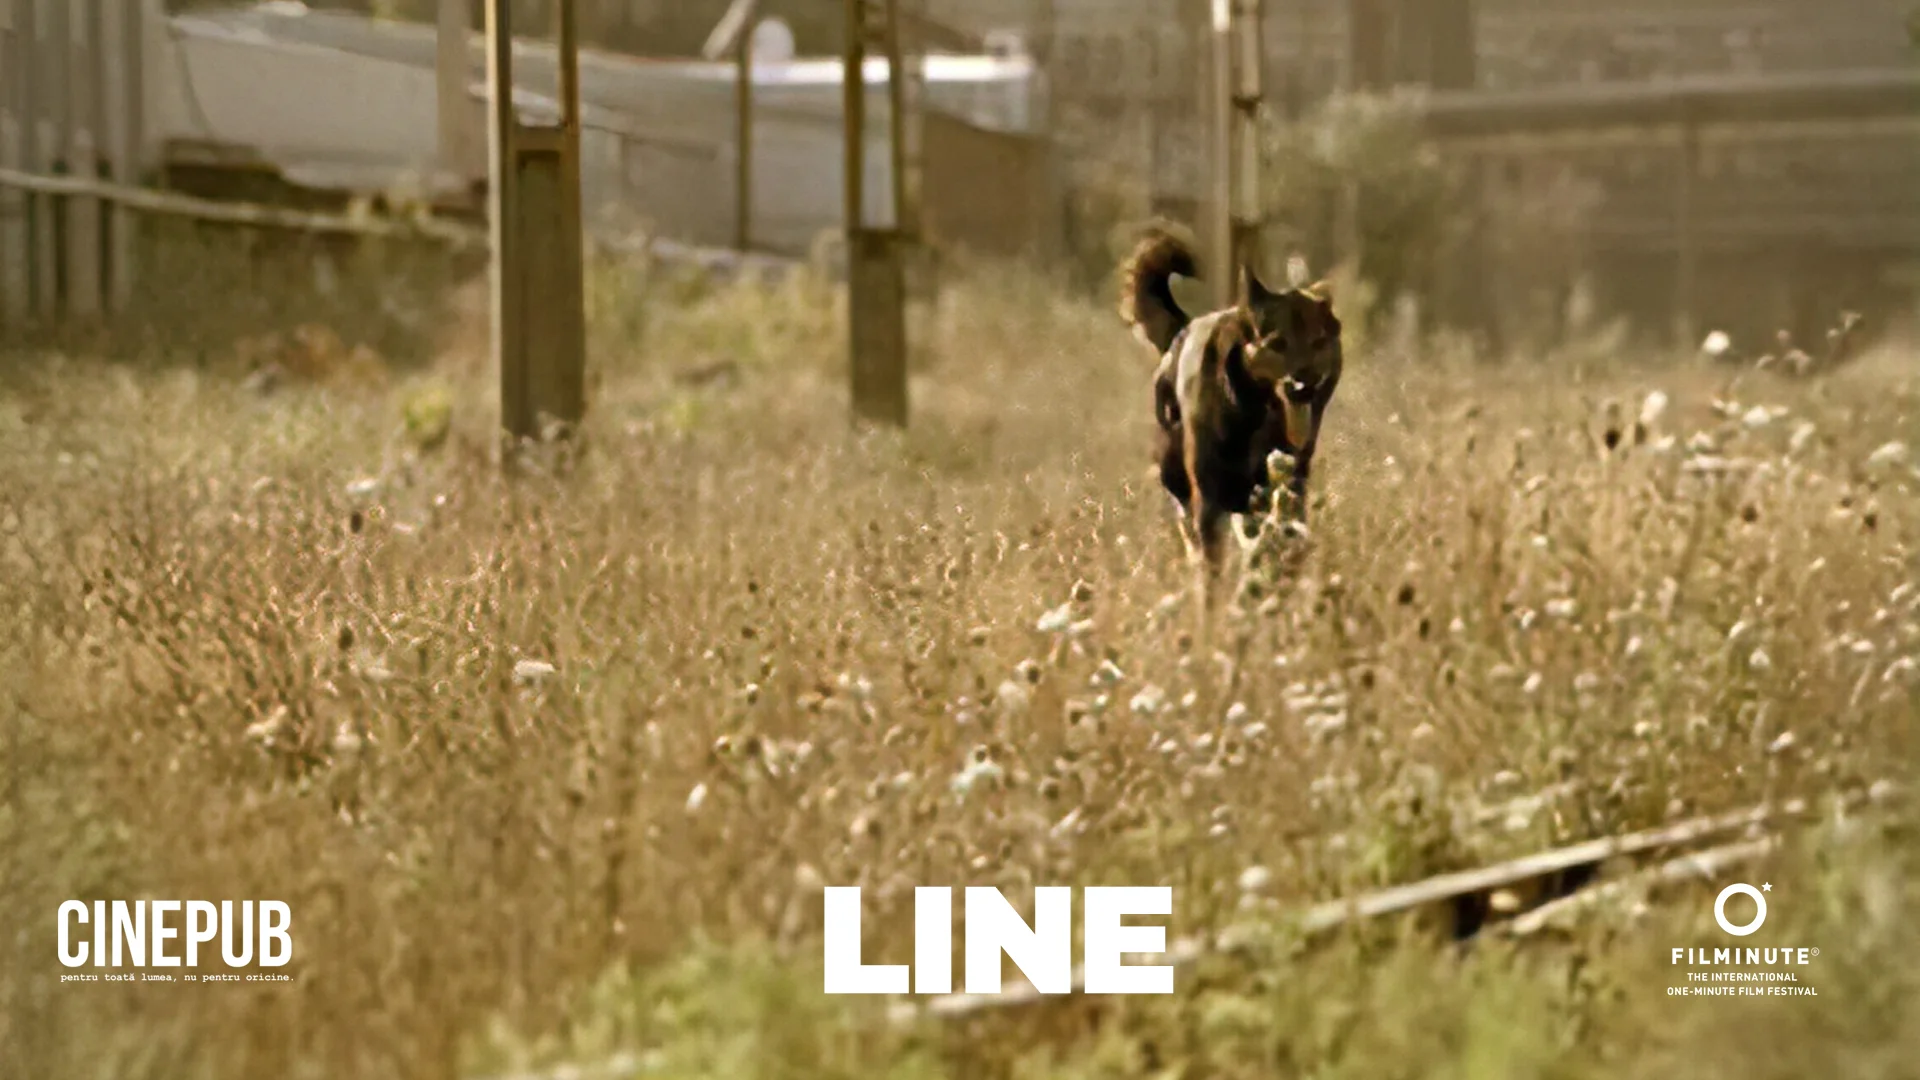 LINE - FILMINUTE & CINEPUB